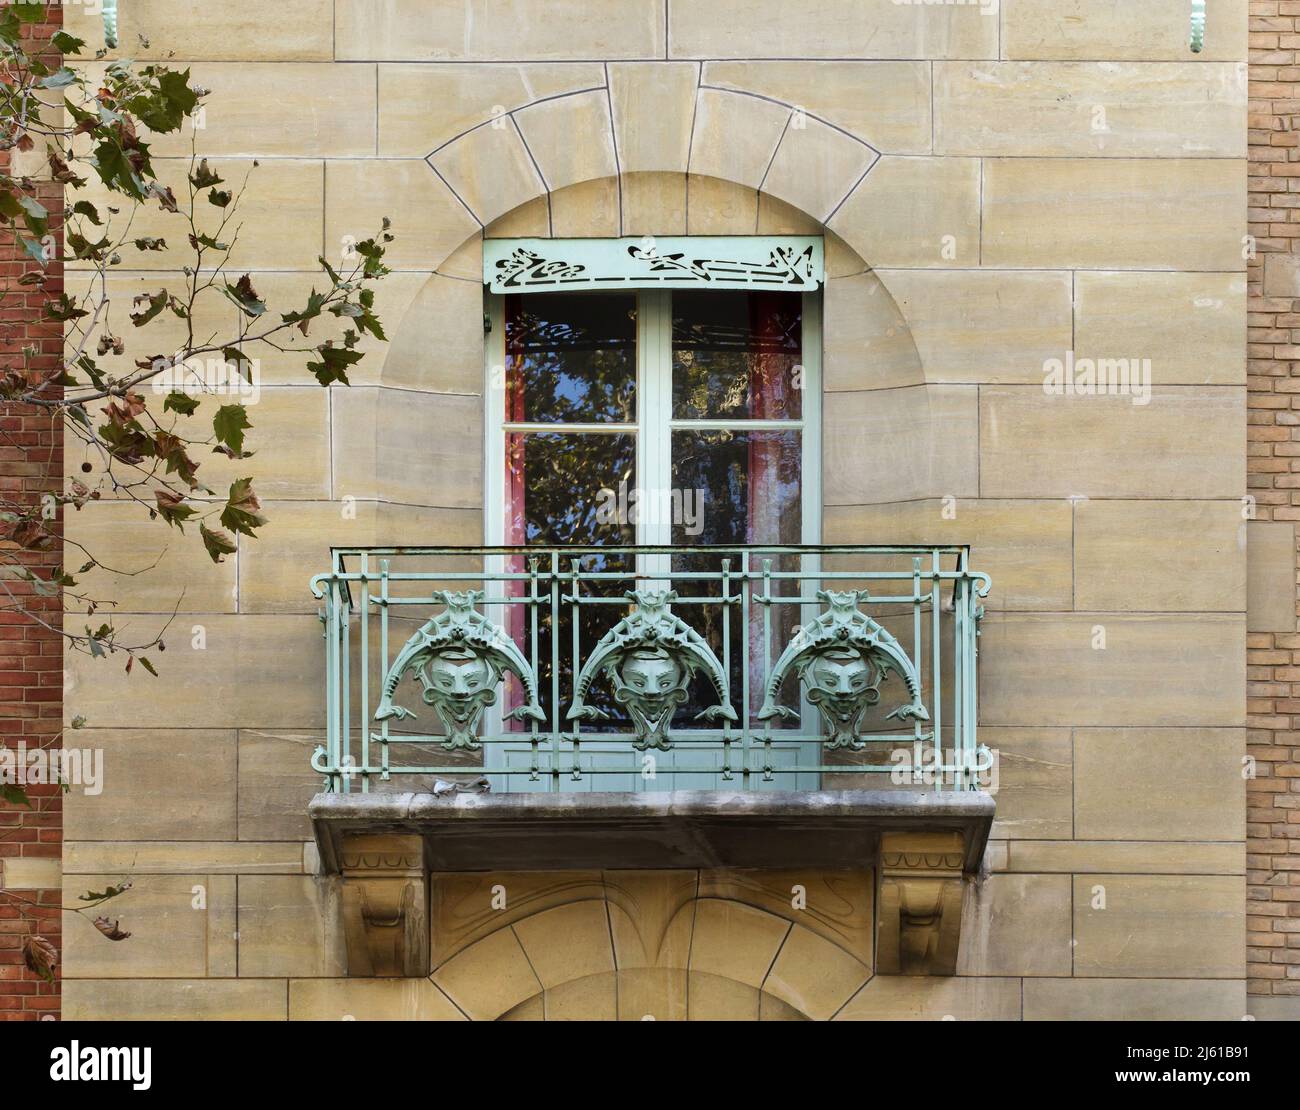 Une des fenêtres du Castel Béranger à Paris, France. Le bâtiment résidentiel appelé Castel Béranger a été conçu par l'architecte français Hector Guimard et construit entre 1895 et 1898 dans la rue de la Fontaine. C'était le premier bâtiment de Paris dans le style Art Nouveau. Banque D'Images